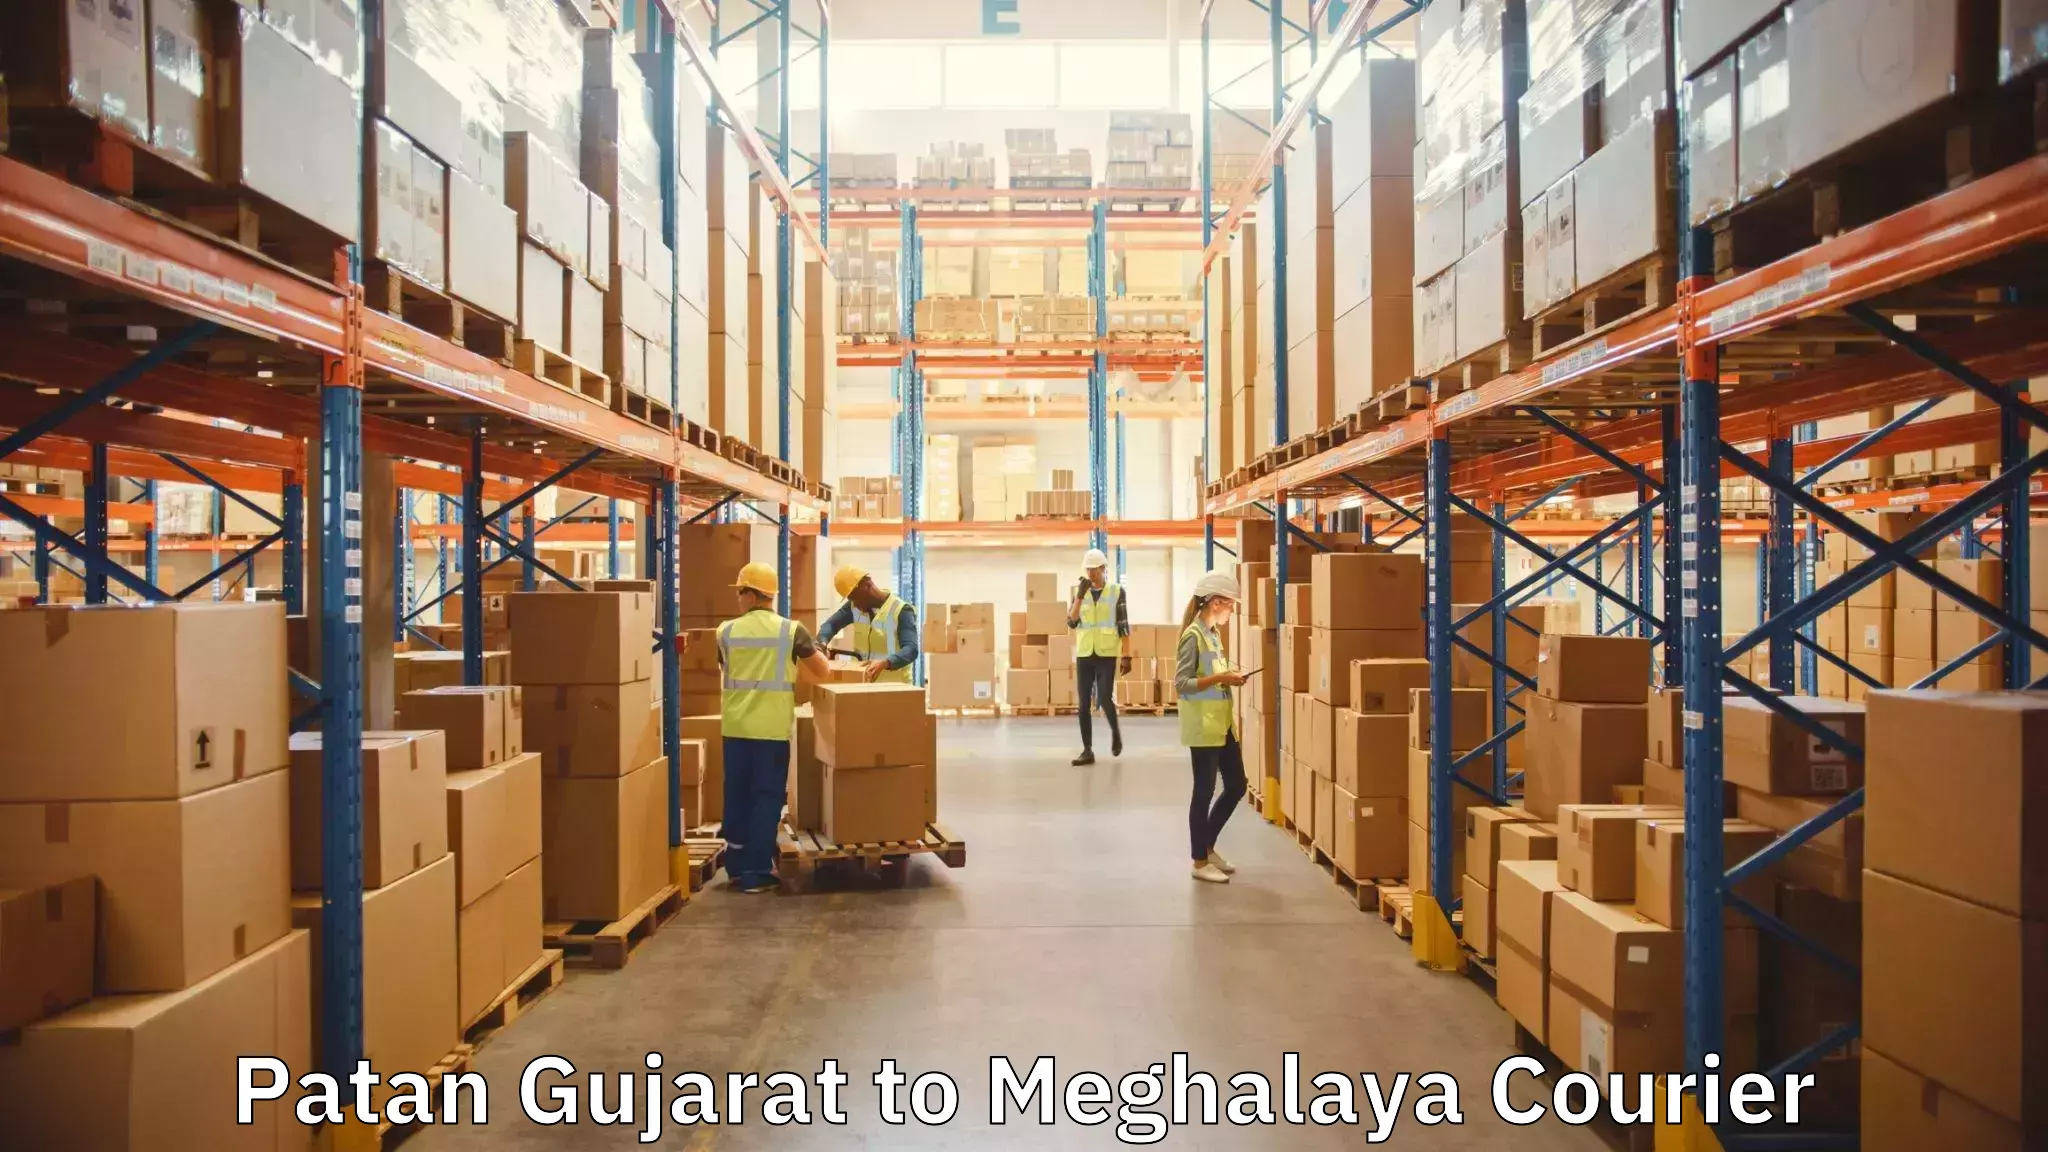 Furniture moving experts Patan Gujarat to Meghalaya